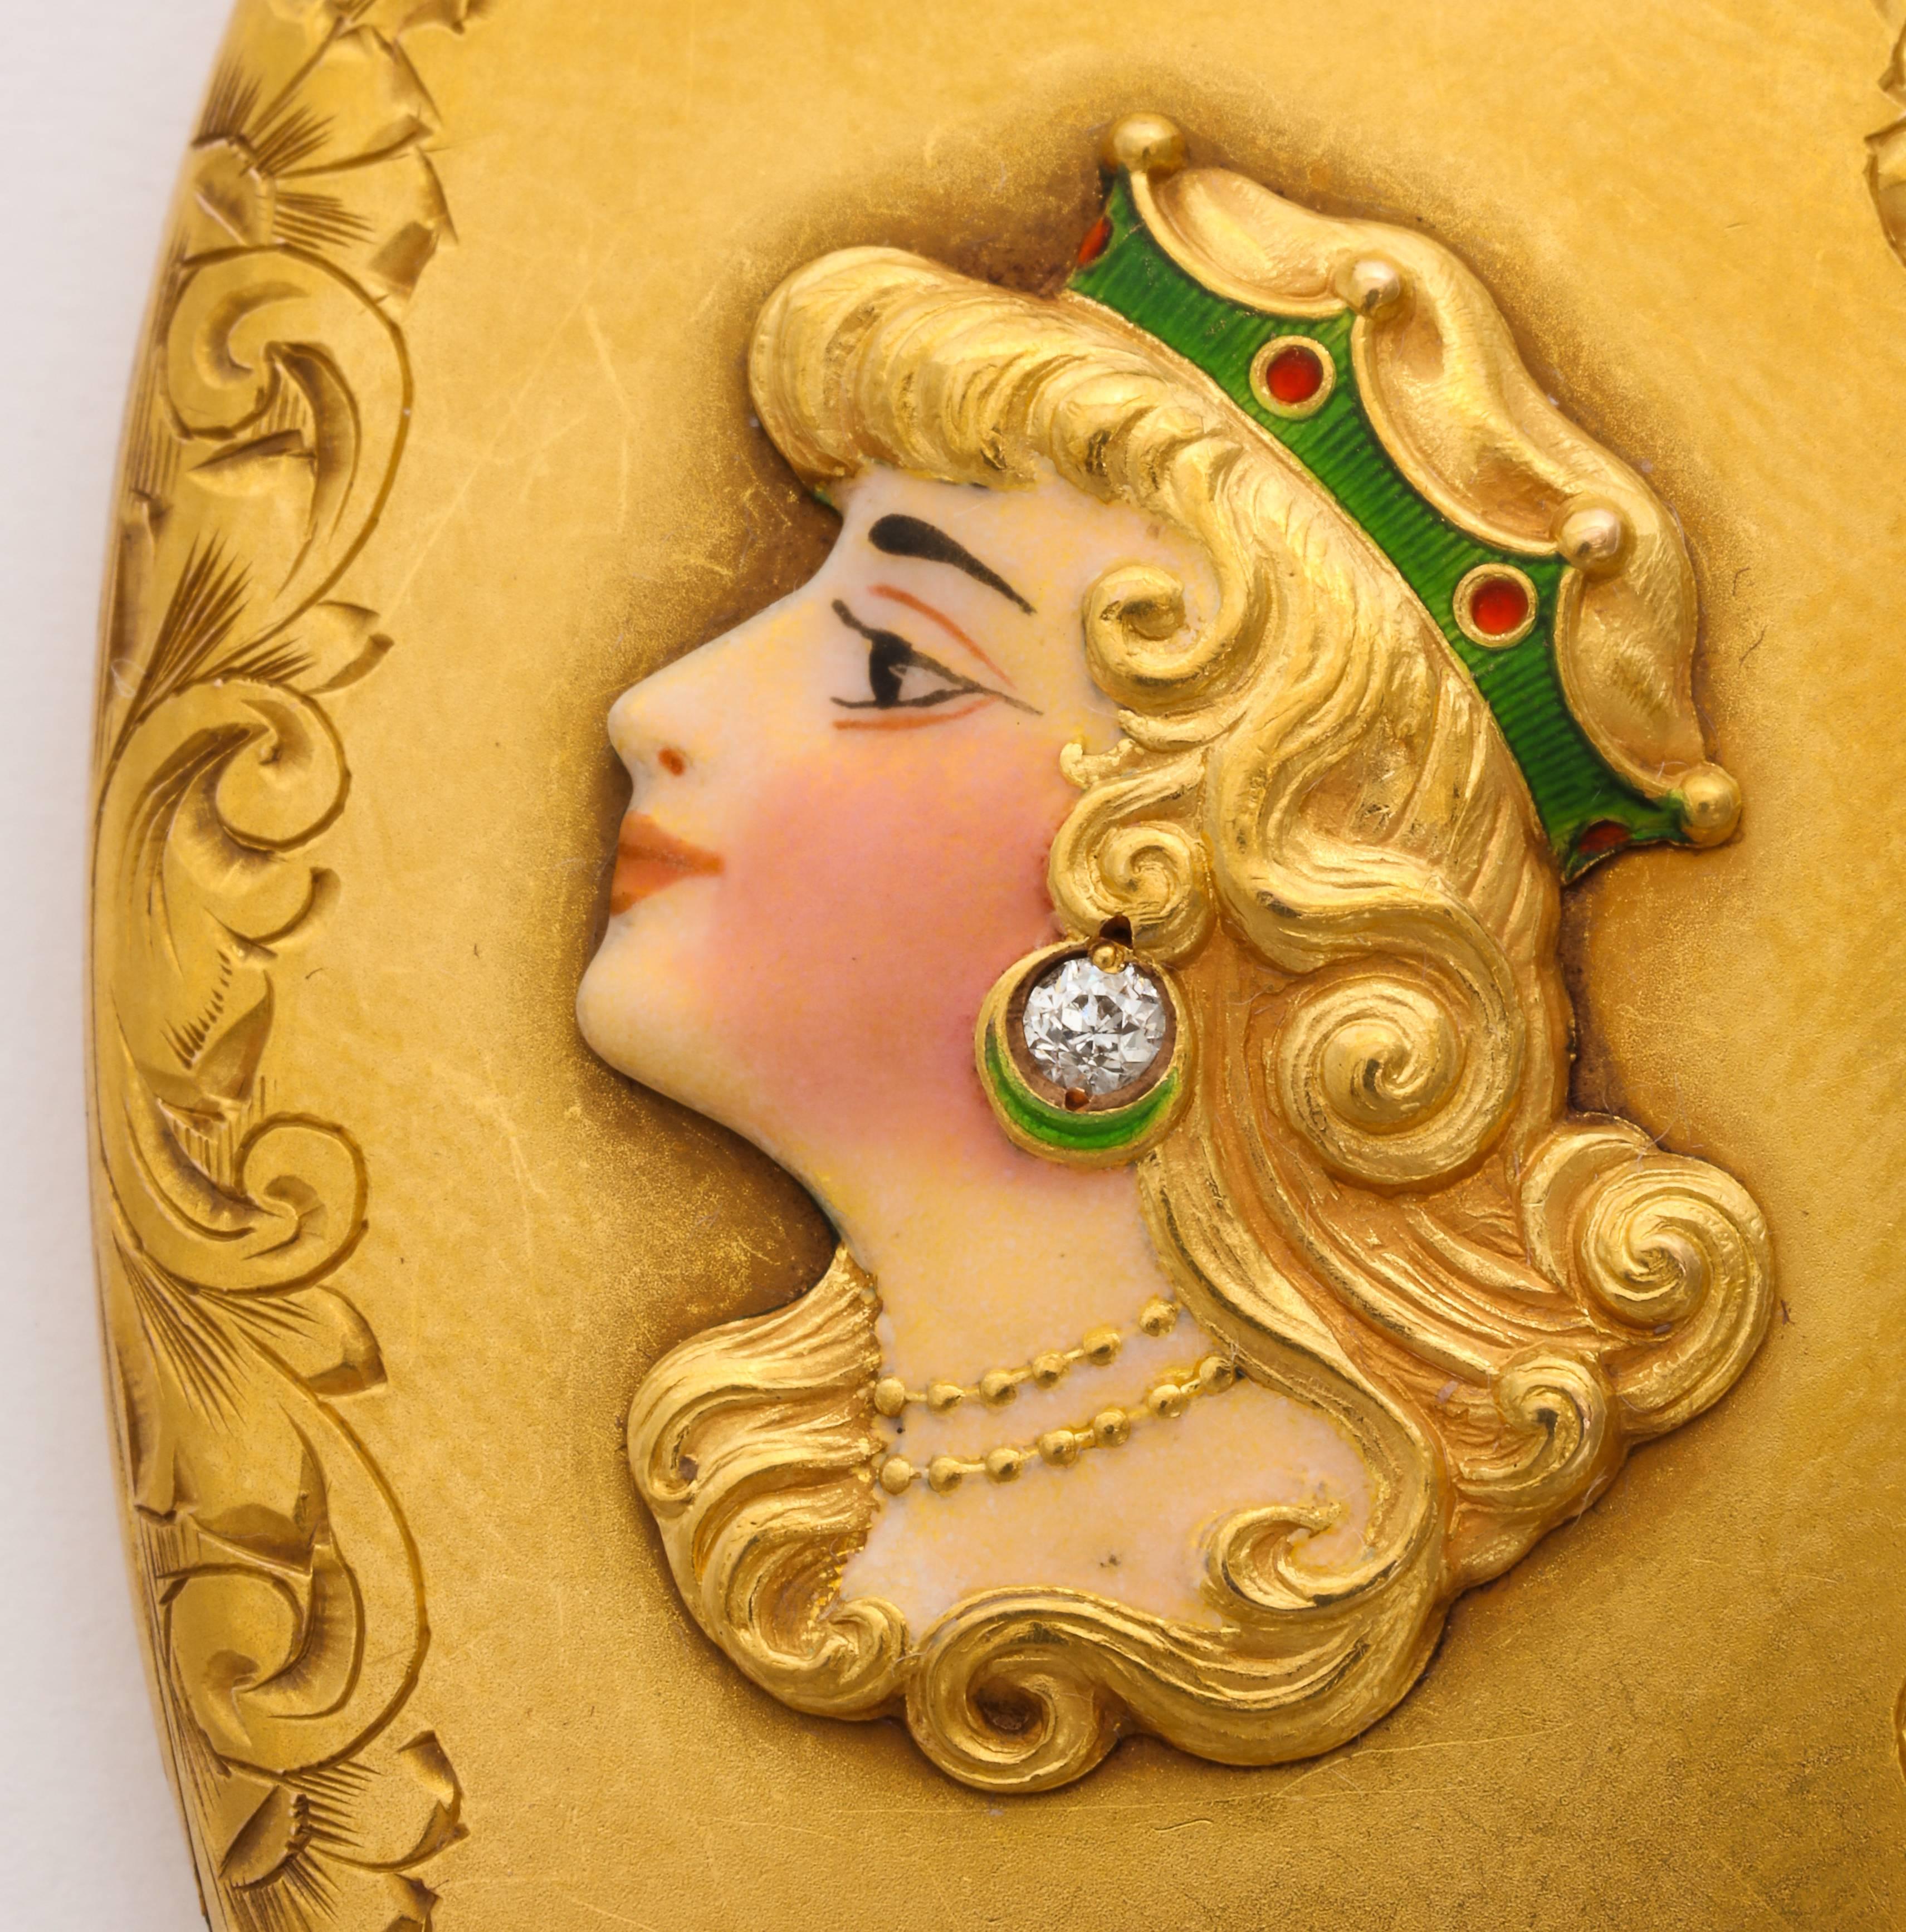 Nous vous proposons ce très beau médaillon américain Art Nouveau en or 14 carats avec des fleurs et des fioritures gravées sur les bords, encadrant une image féminine en 3 dimensions avec une boucle d'oreille en diamant et une couronne émaillée. Le